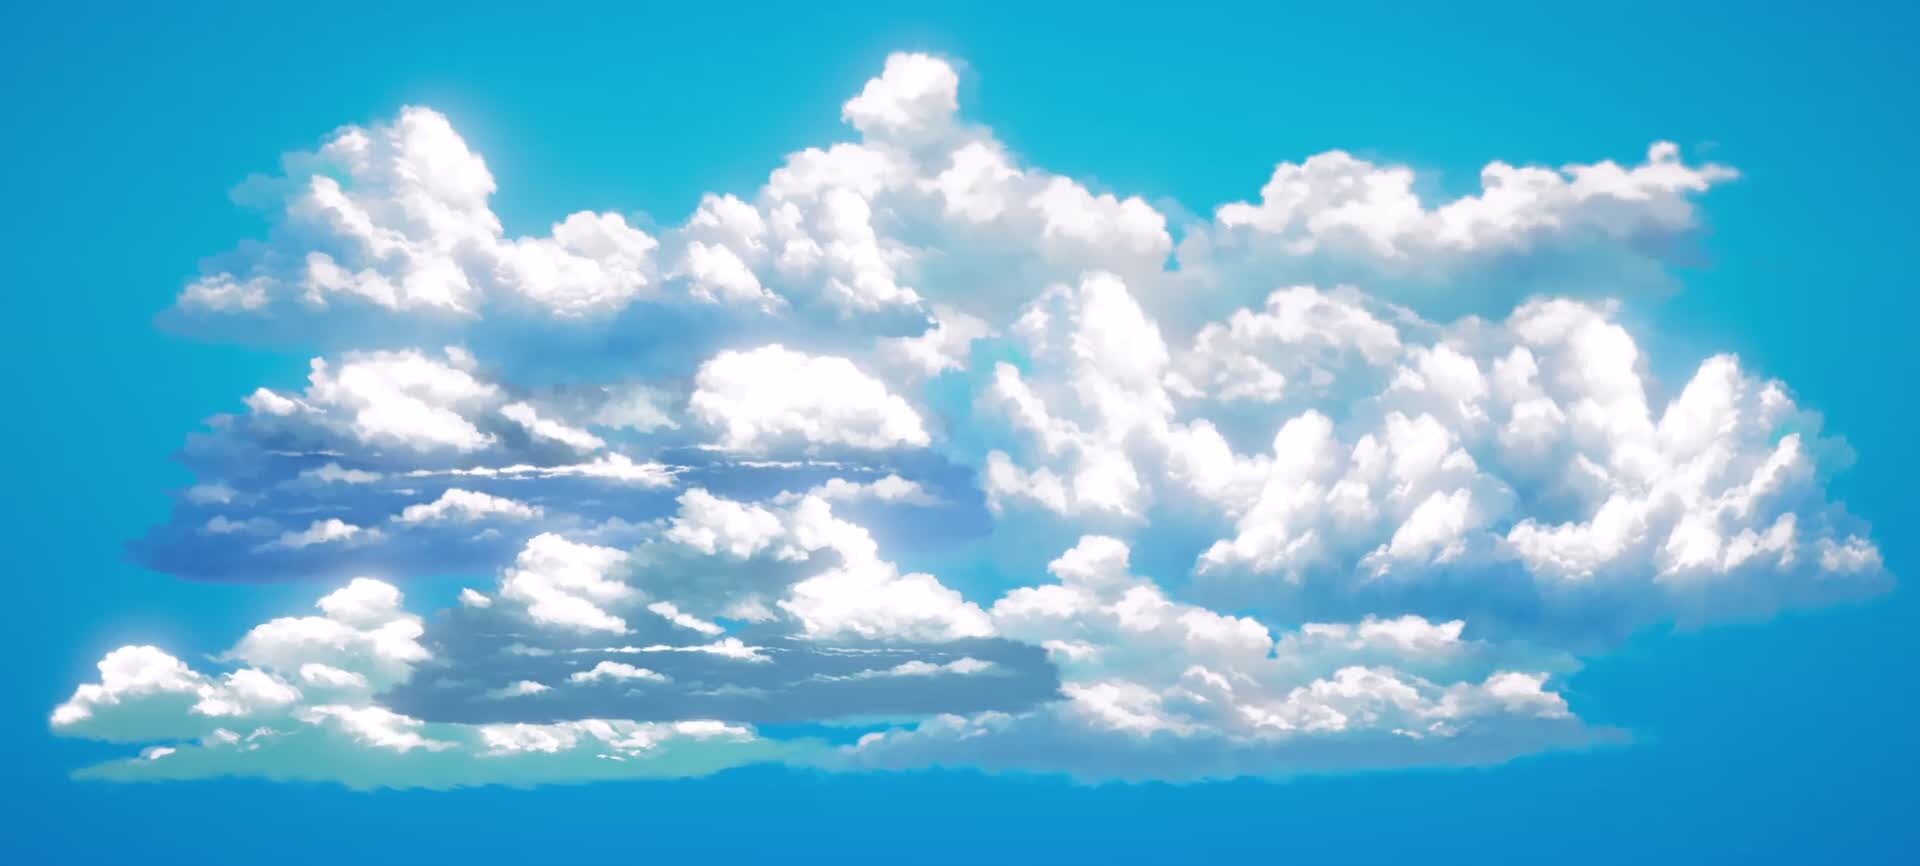 ArtStation - Stylized Cloud